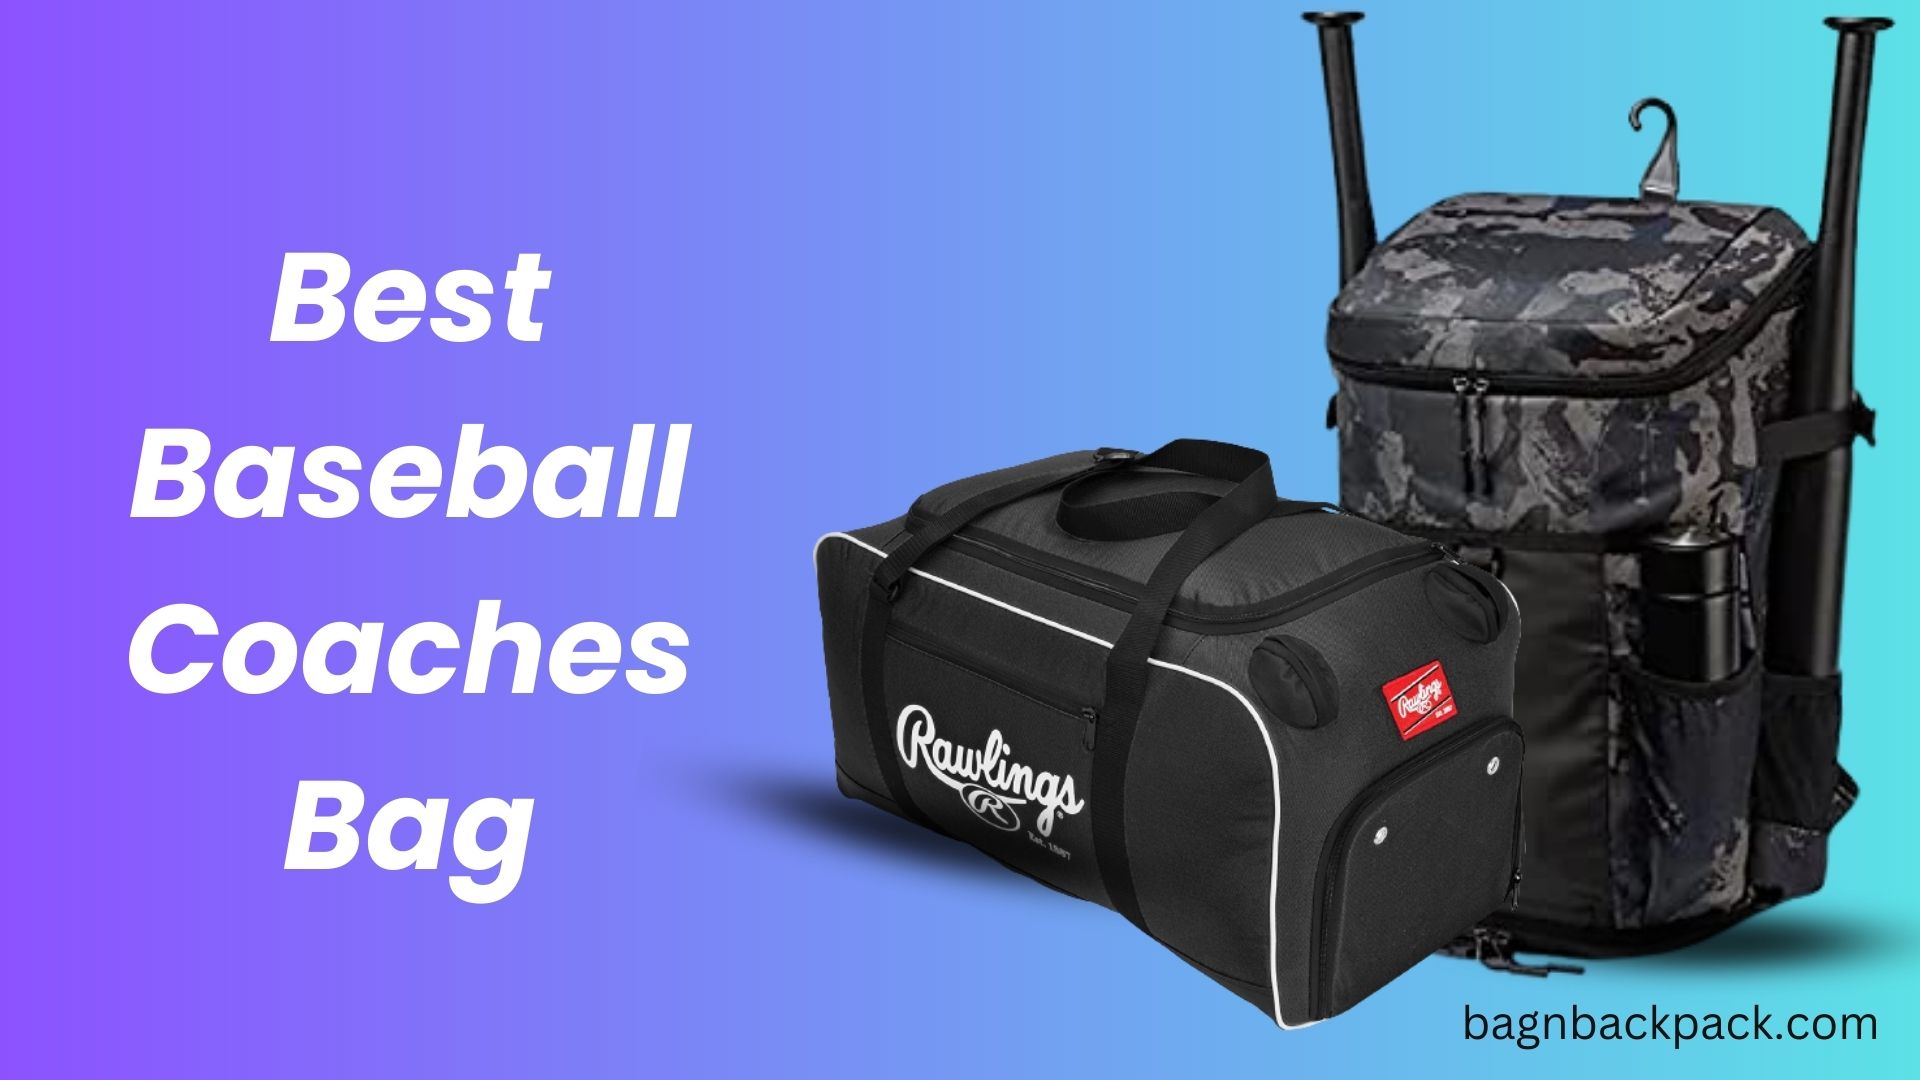 Best Baseball Coaches Bag